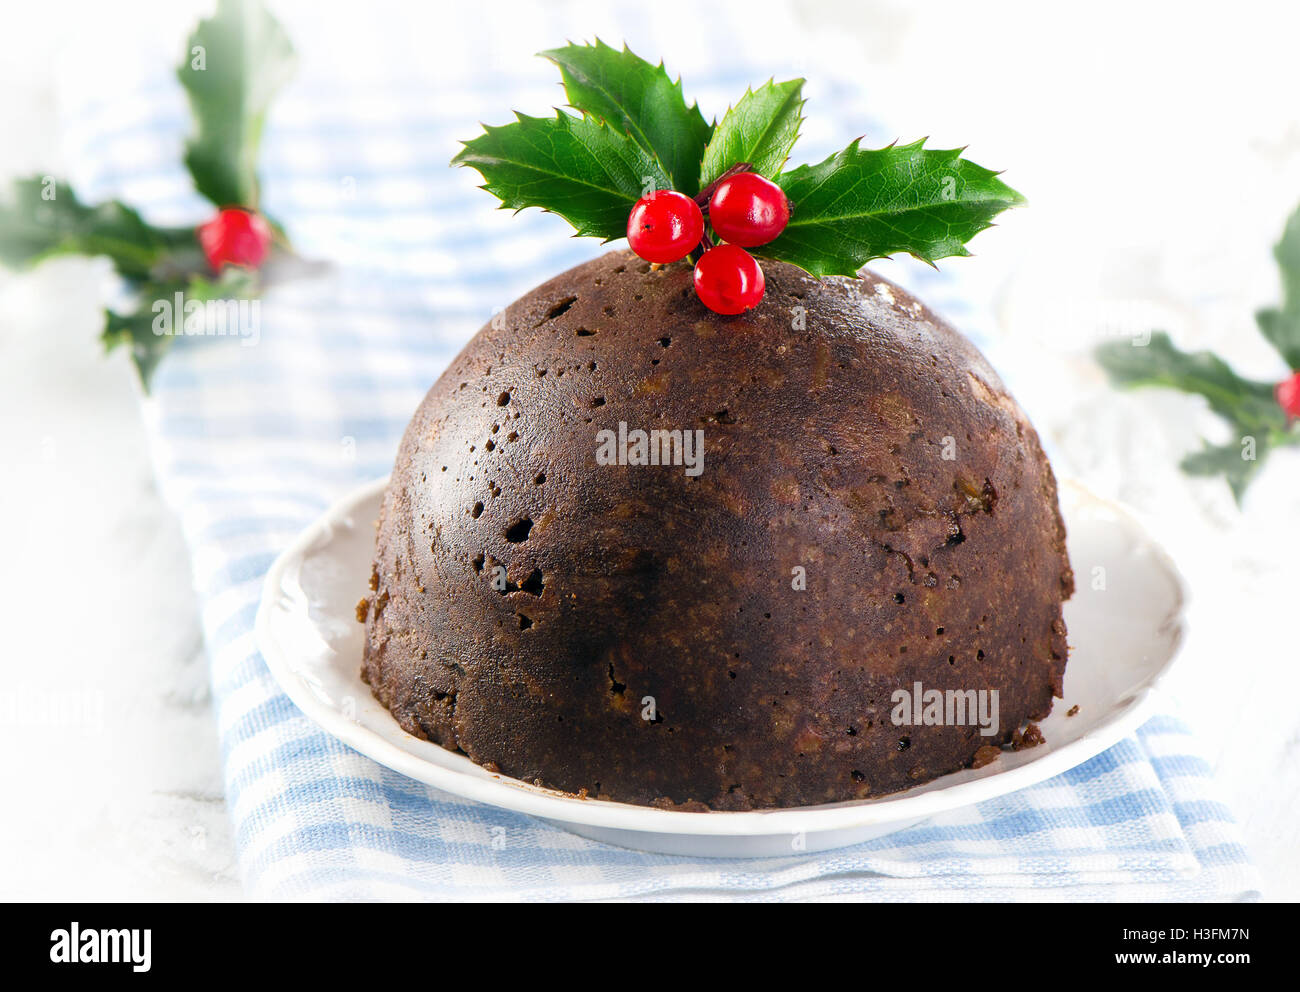 Le pudding de Noël avec de houx sur une plaque blanche. Selective focus Banque D'Images